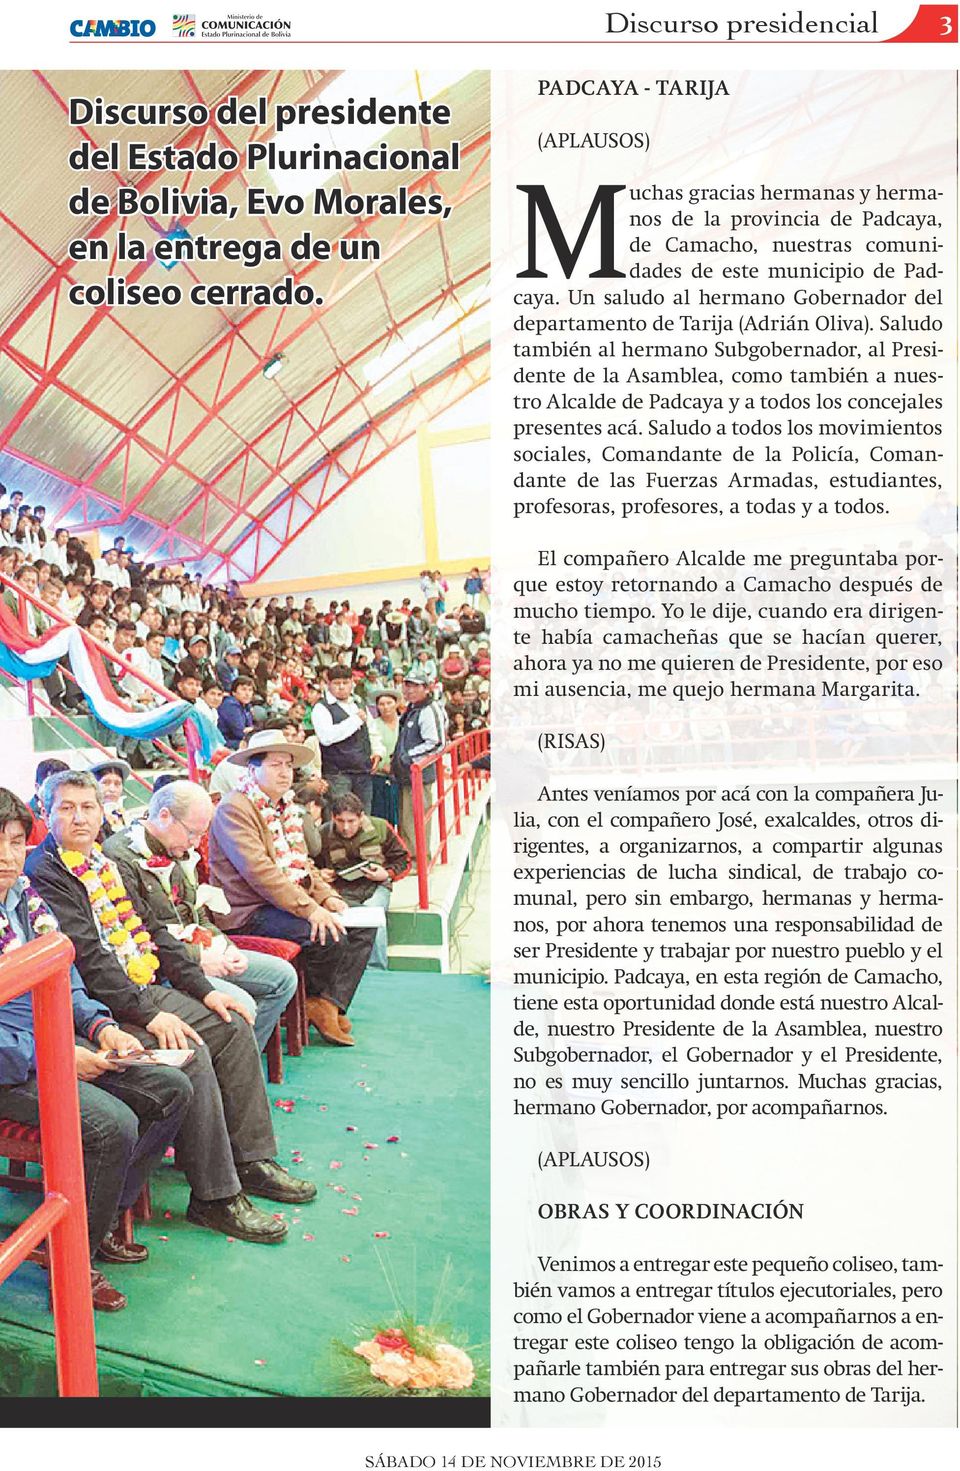 Un saludo al hermano Gobernador del departamento de Tarija (Adrián Oliva).